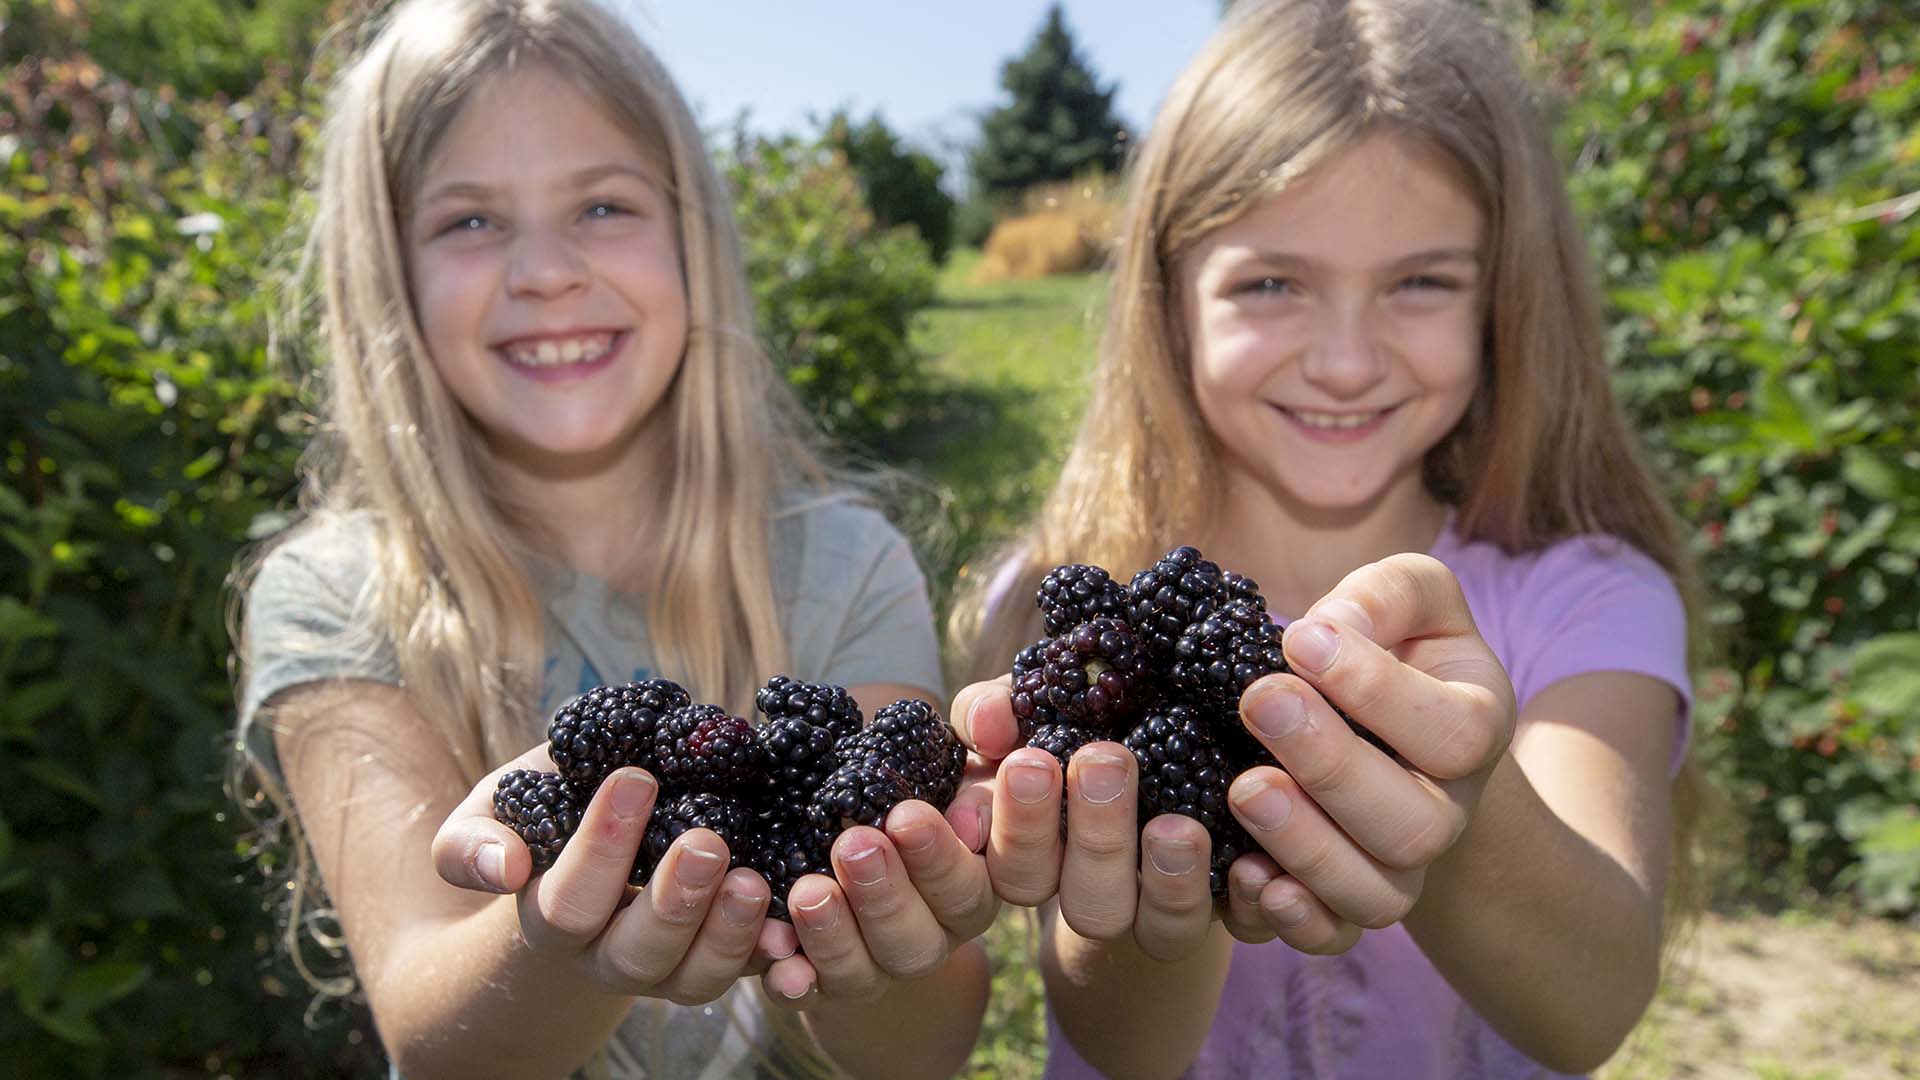 Two children with handfuls of blackberries.